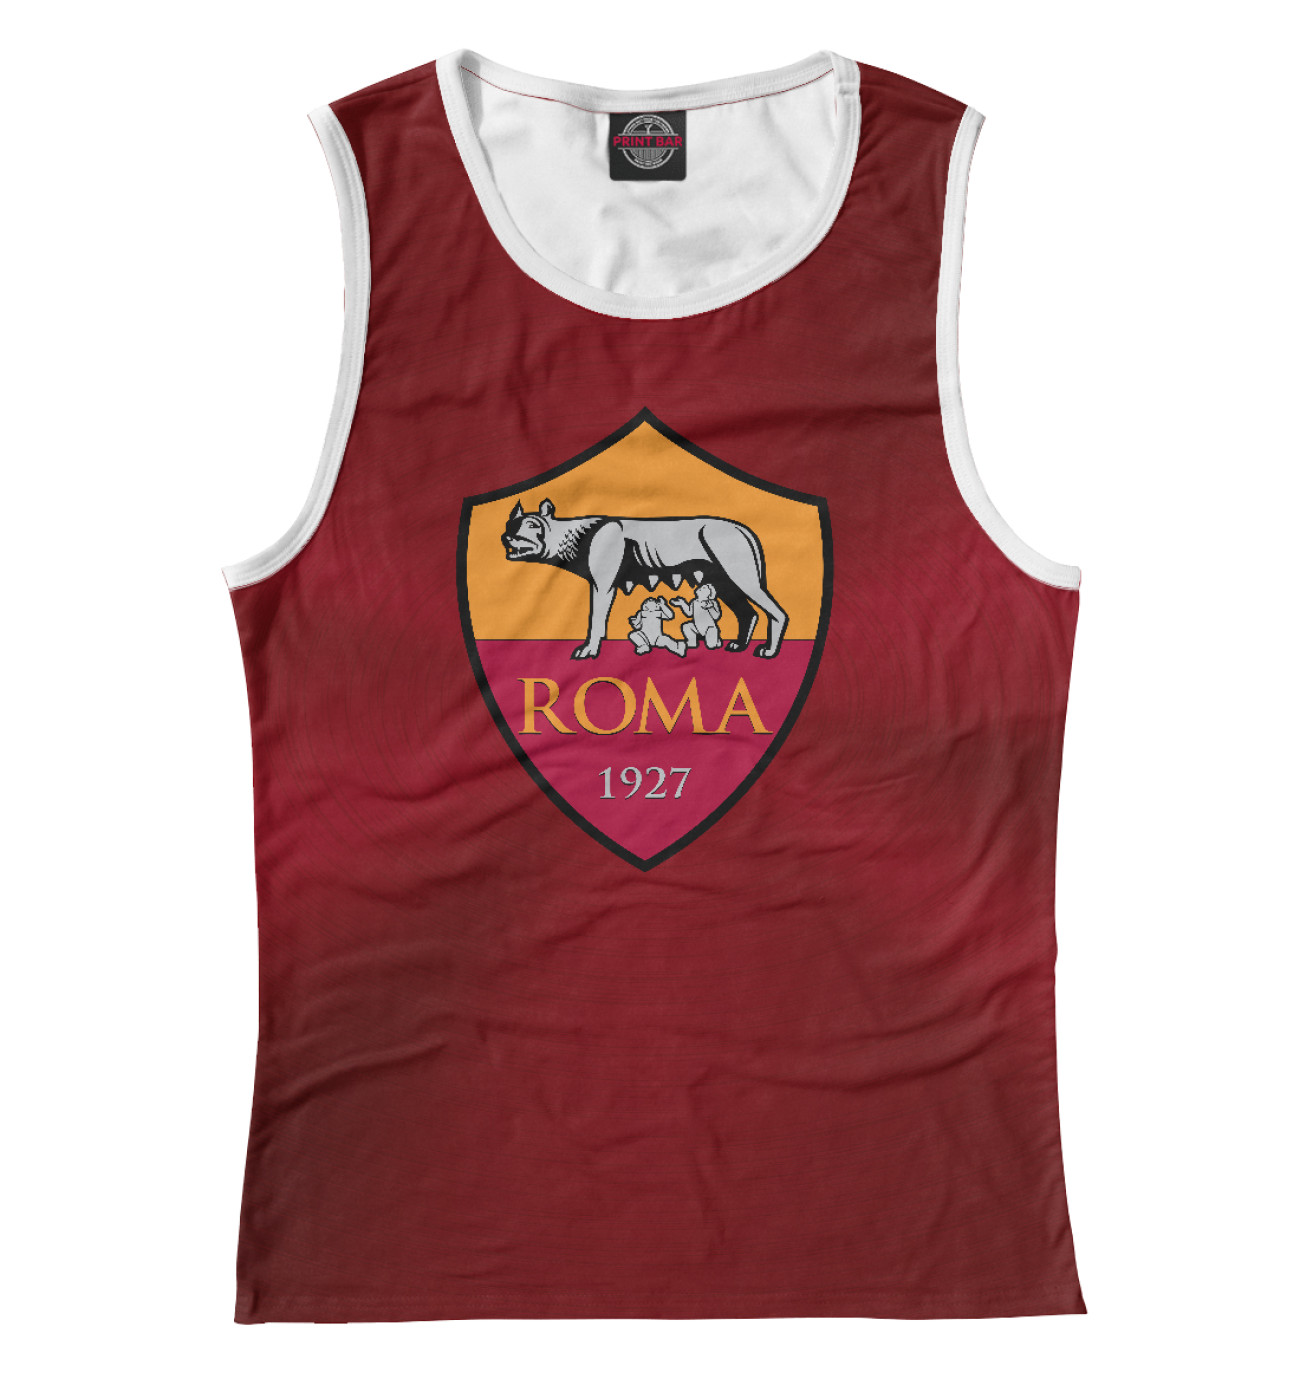 Женская Майка FC Roma Red Abstract, артикул: FTO-581967-may-1